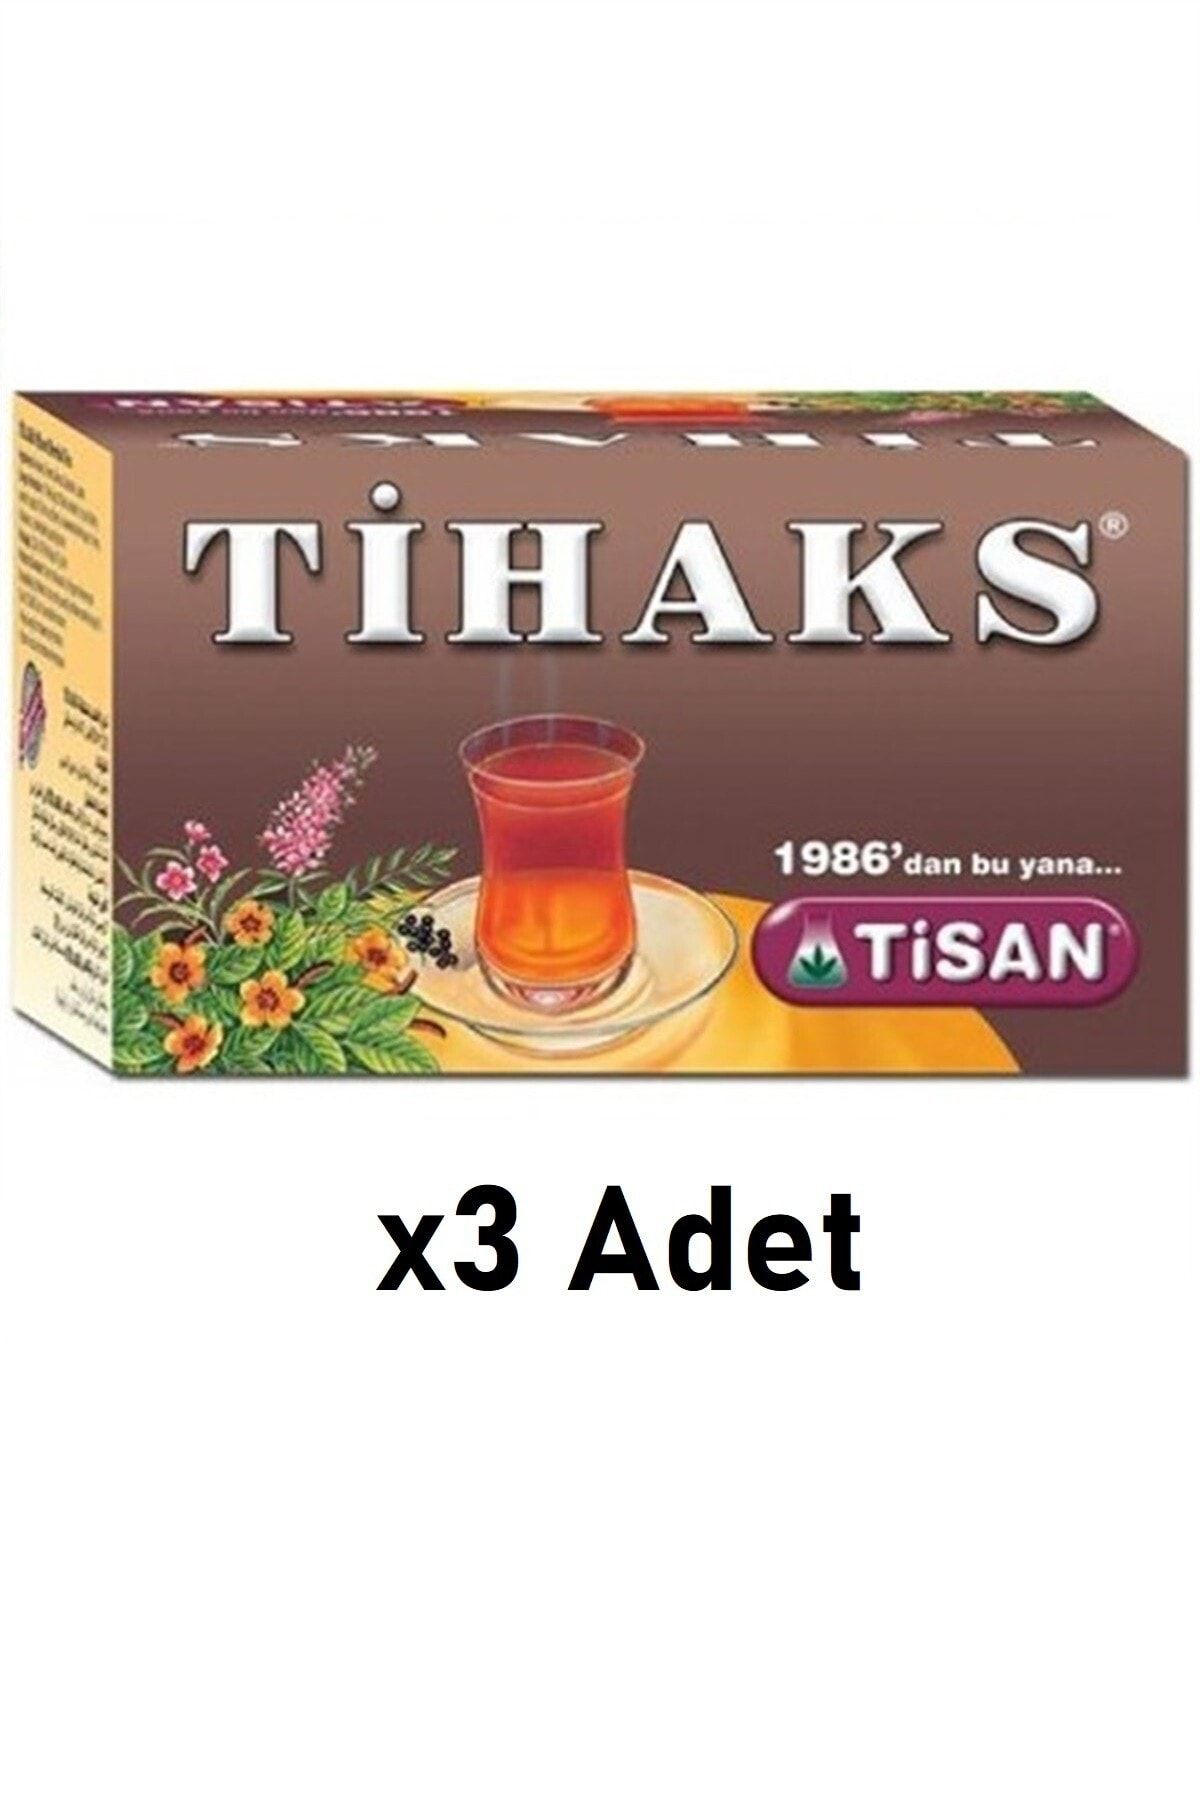 aktarix Tihaks Tisan Karışık Bitki Çayı 20 Süzen Poşet 3 Adet